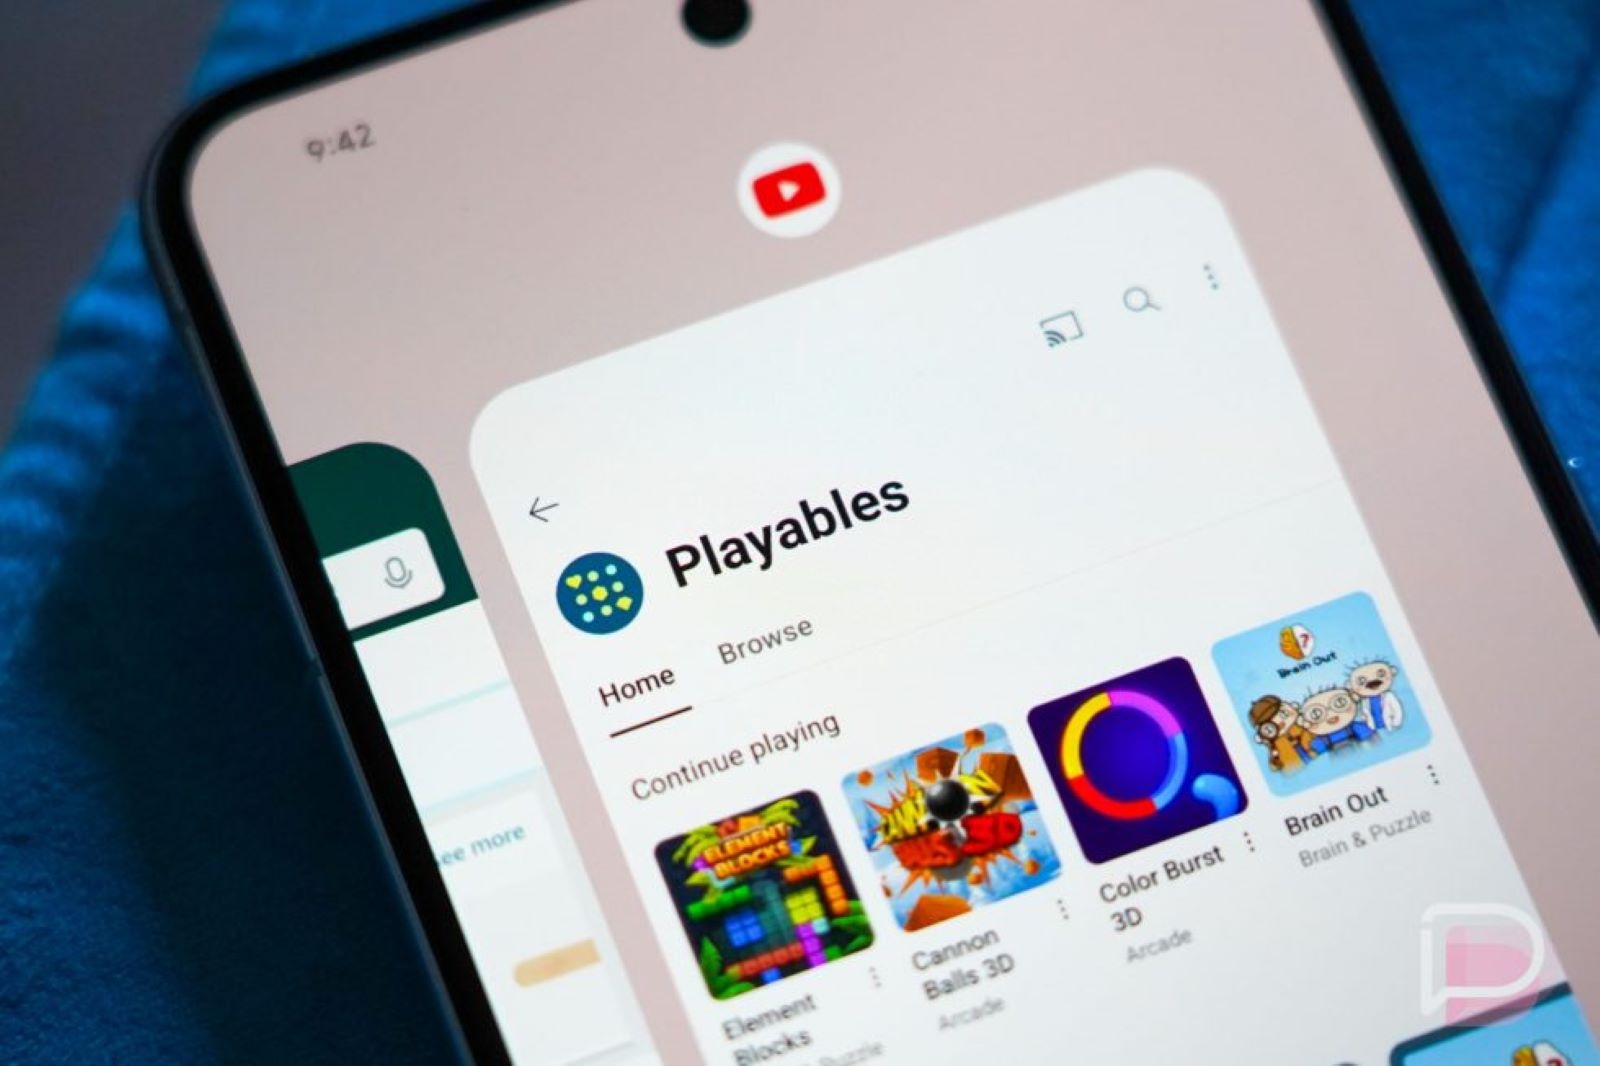 YouTube hé lộ tính năng “Playables” dành cho người dùng Premium